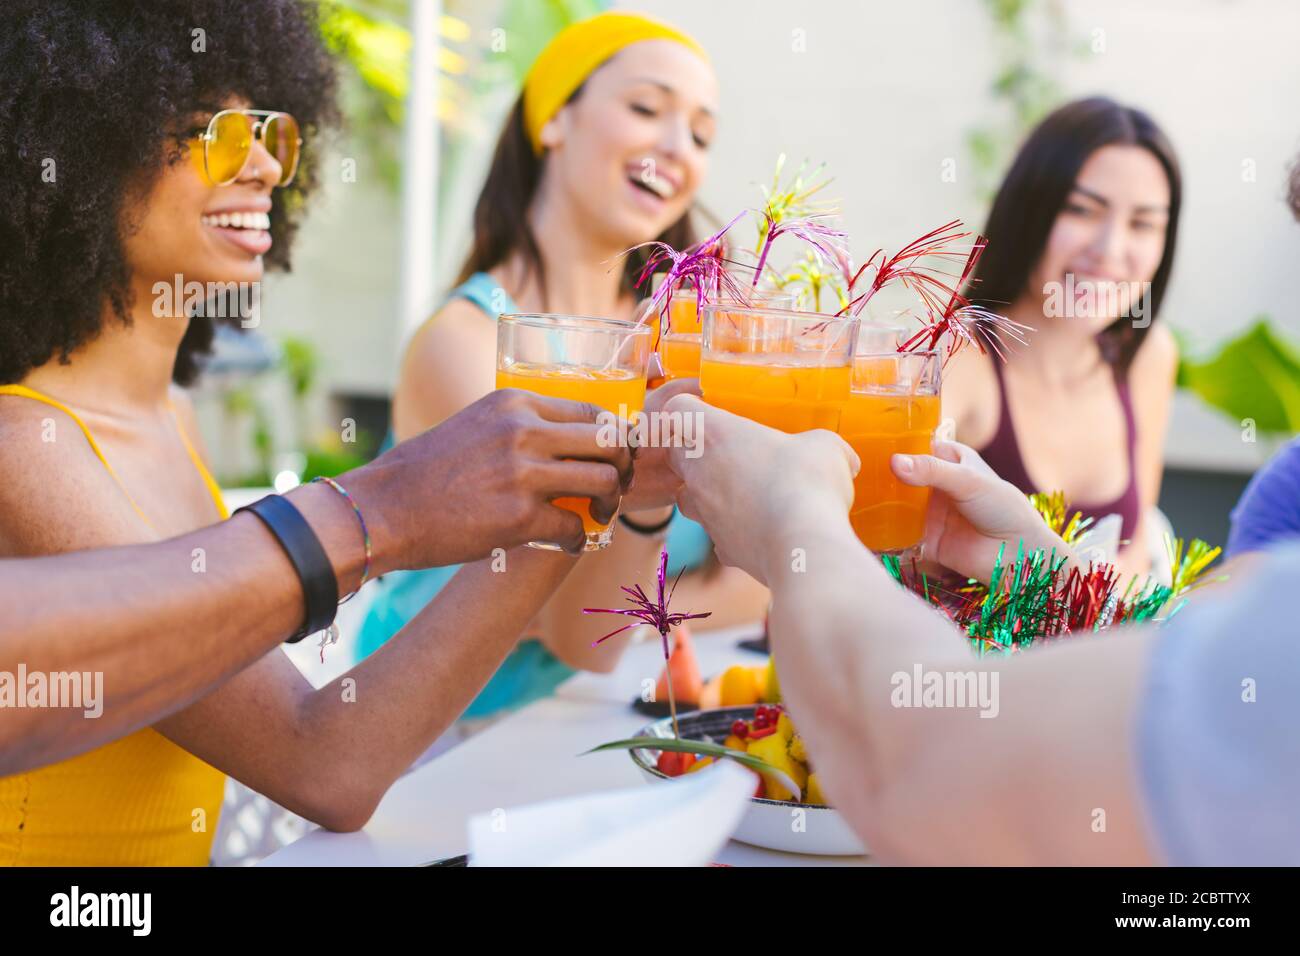 Immagine di un gruppo multirazziale di amici che brinda con cocktail - concetto di amicizia, celebrazione e vacanza Foto Stock